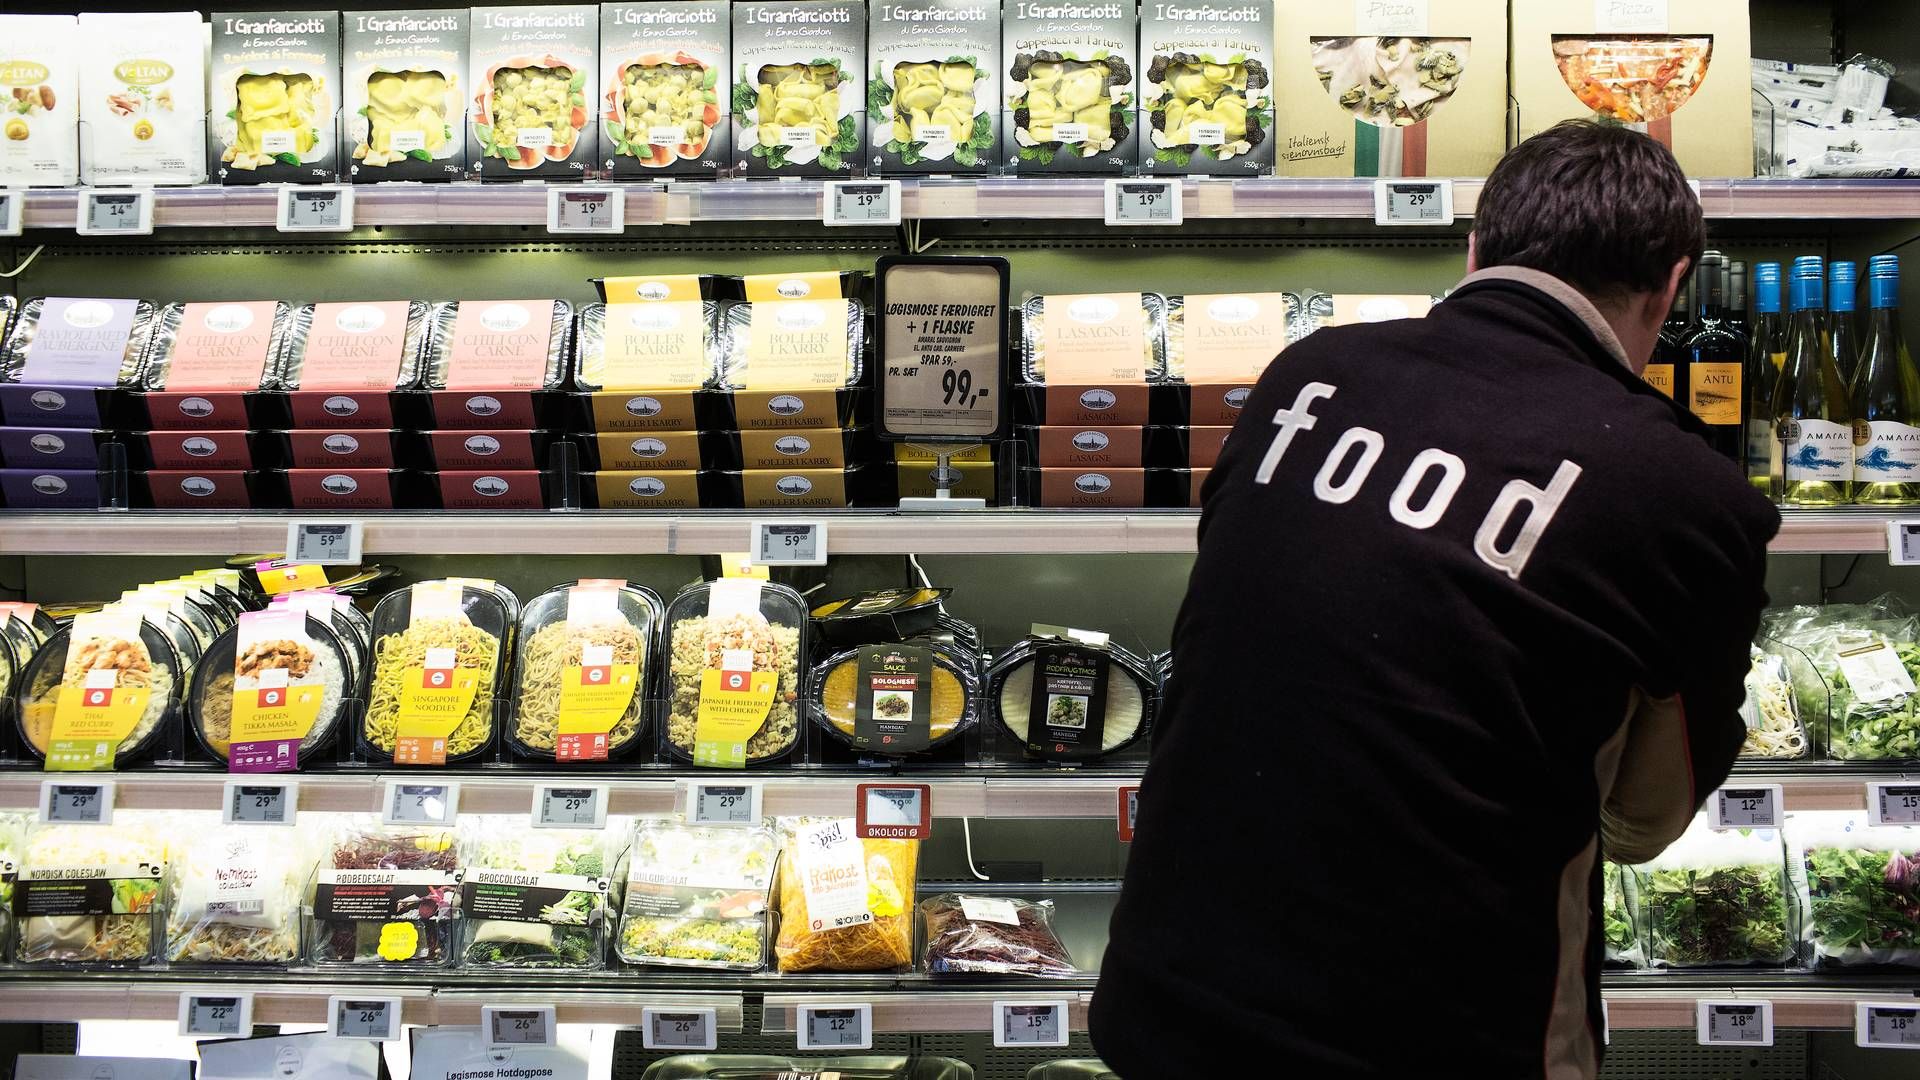 En ny rapport fra McKinsey & Company og EuroCommerce forudser, at kategorien food to go i detail- og engrossektoren vil vokse sig større de kommende år. | Foto: Jens Henrik Daugaard/Ritzau Scanpix.